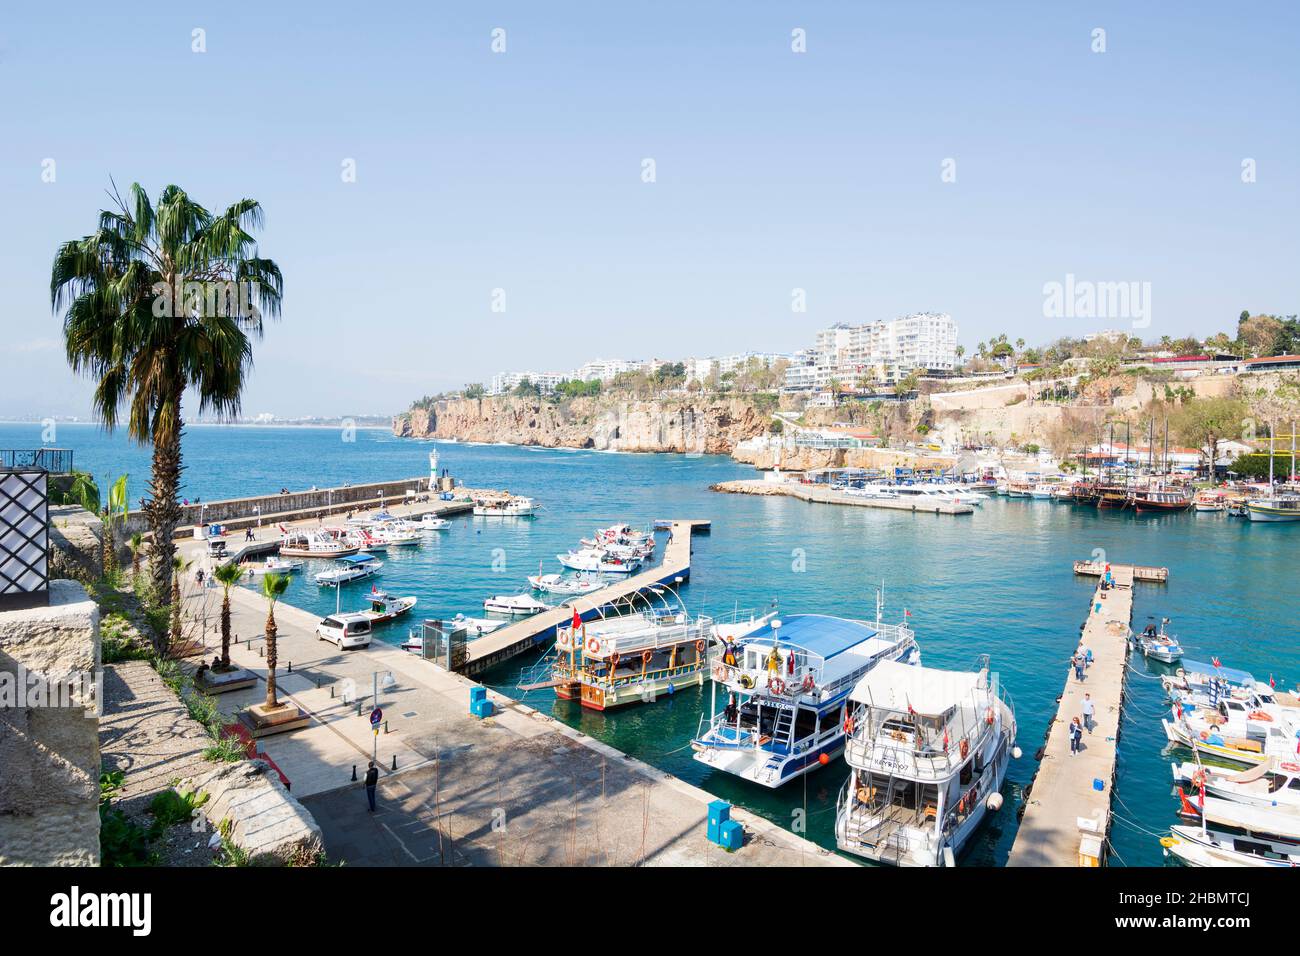 Antalya, Turkey - March 14 2020: Marina in the town of Antalya. Stock Photo